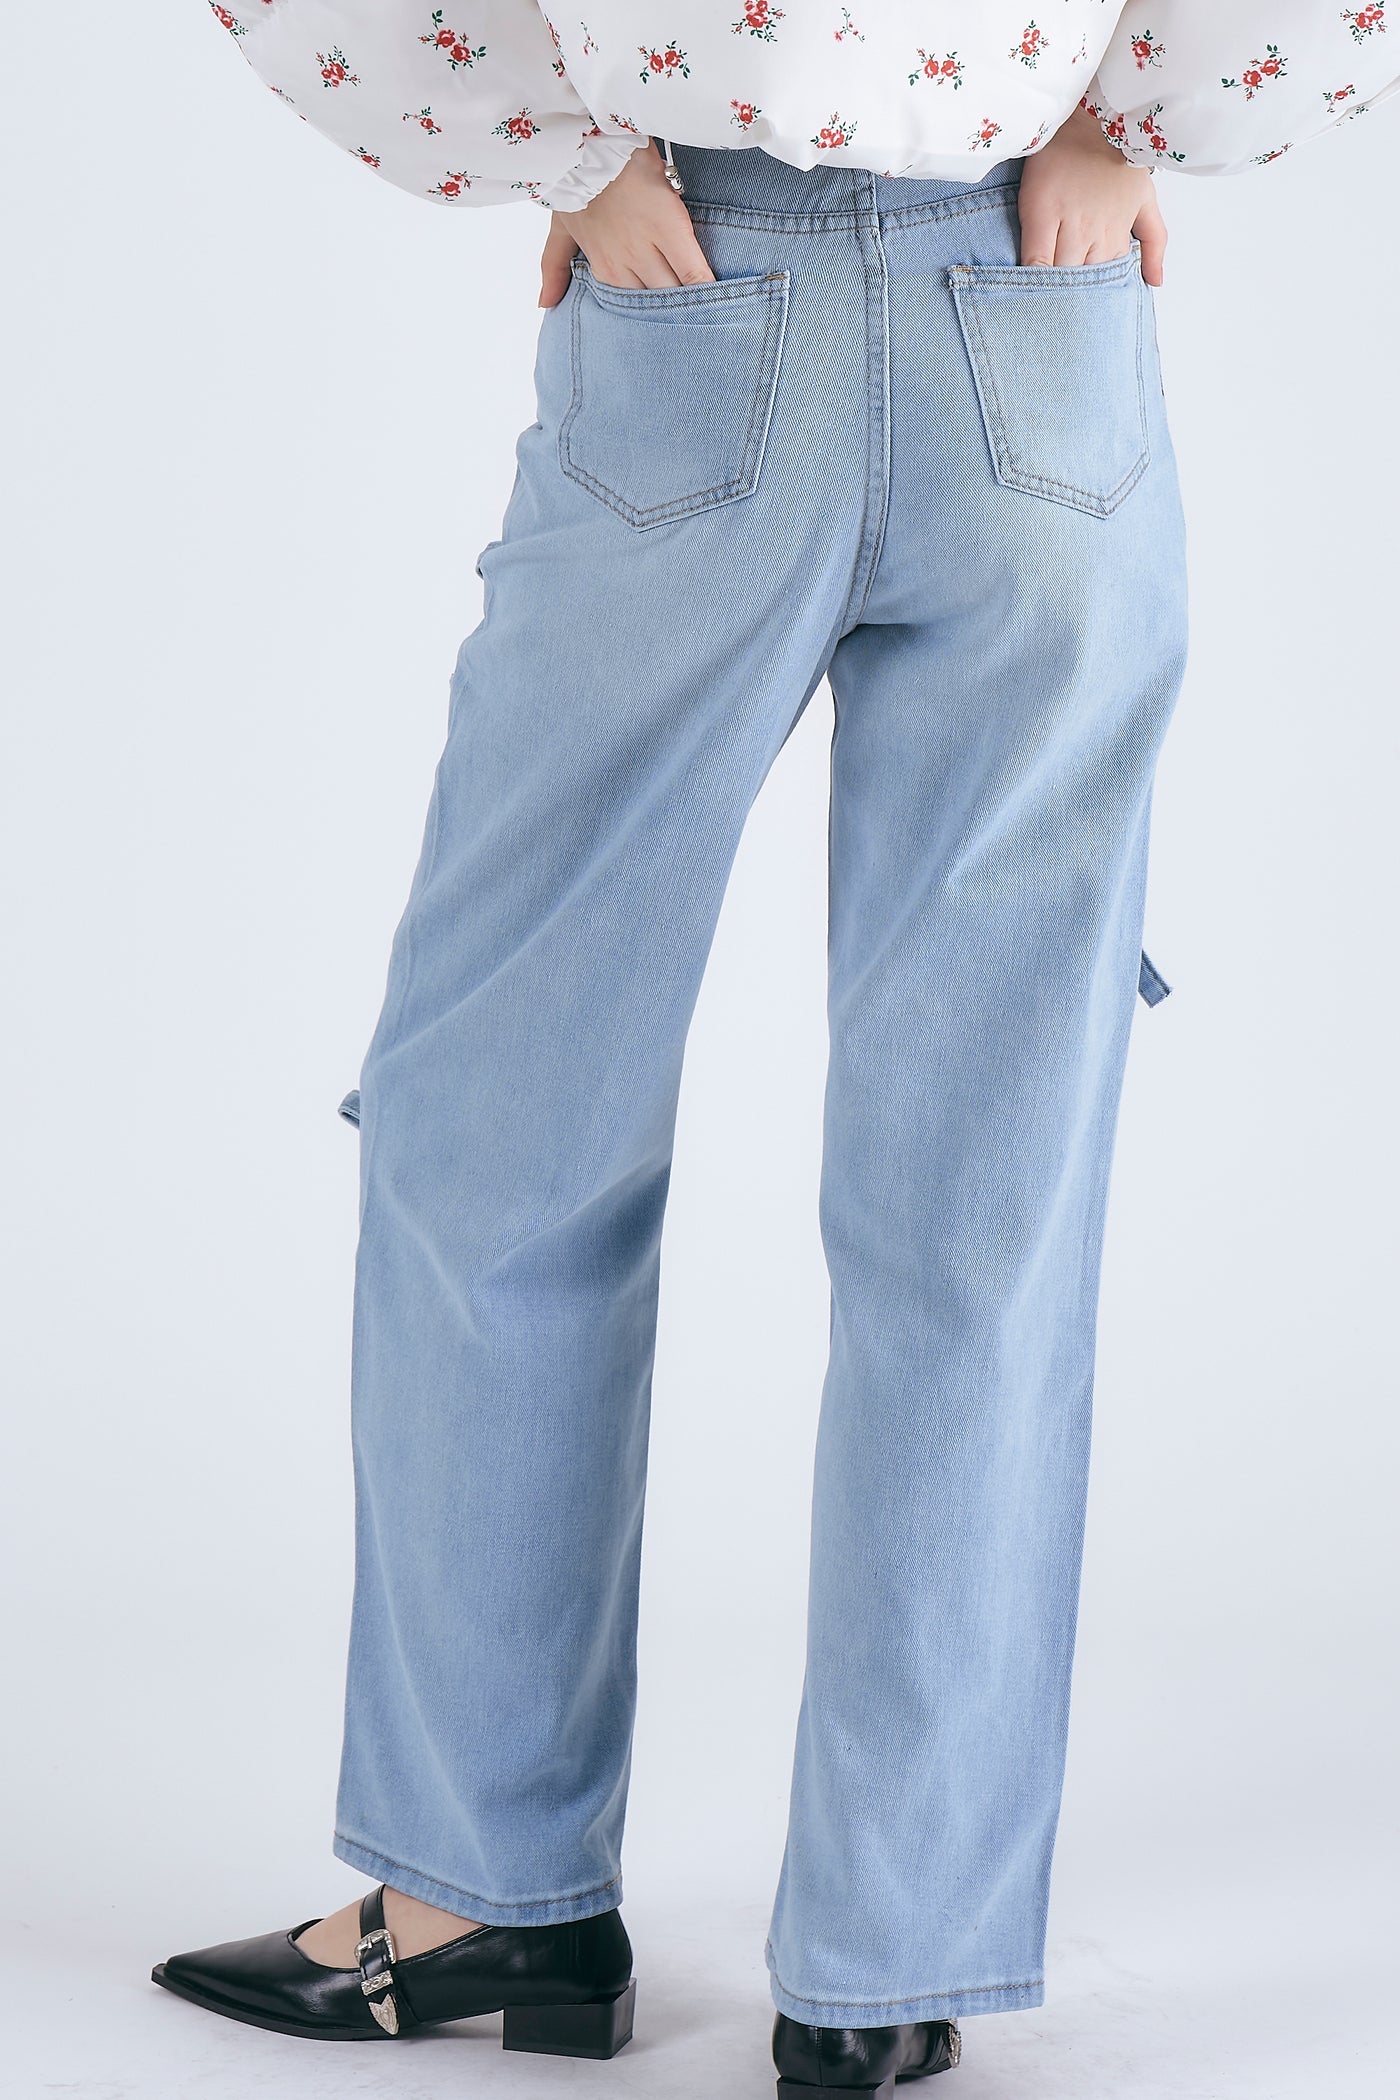 storets.com Maisie Bow Detail Jeans